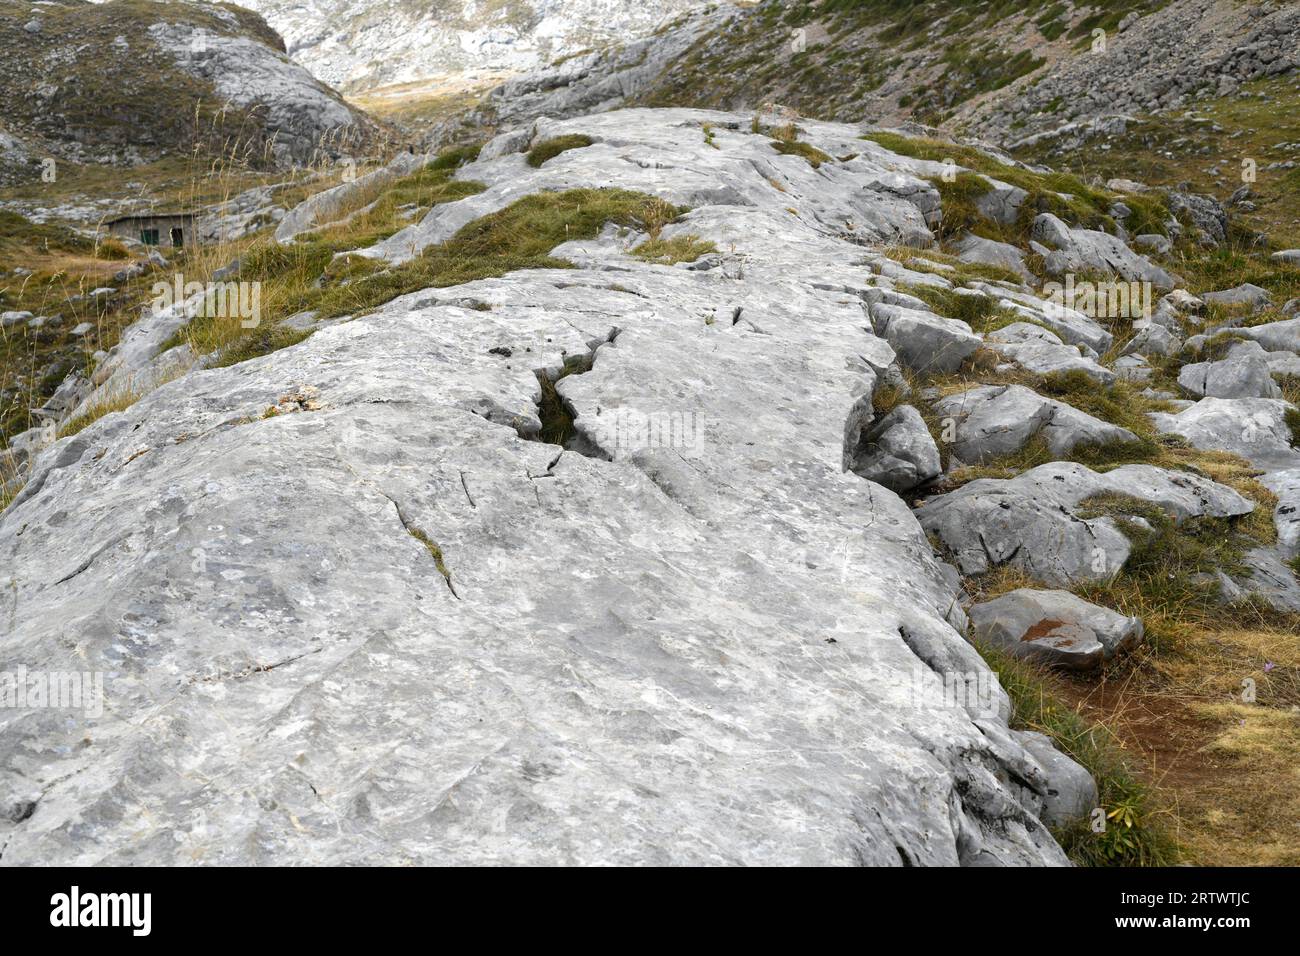 Drumlin glazialen Ursprungs bildete sich auf Kalkstein. Dieses Foto wurde im Nationalpark Picos de Europa, Fuente de, Cantabria, Spanien aufgenommen. Stockfoto